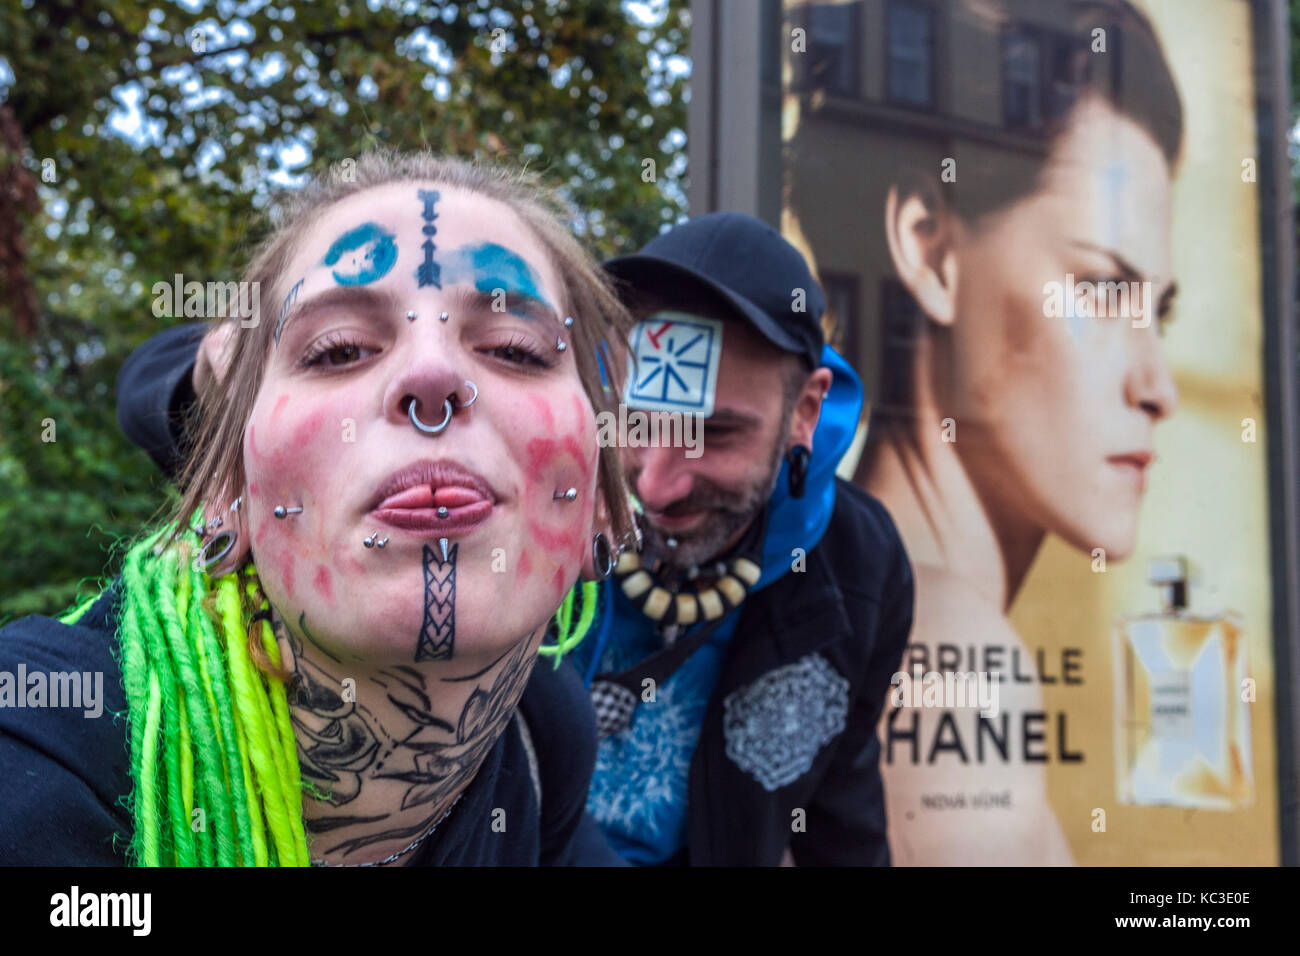 Junge tätowierte Frau Mädchen mit Piercing auf ihrem Gesicht und grünen Dreadlocks, im Rücken ist eine Anzeige auf Parfüm Chanel, Prag, Tschechische Republik Stockfoto